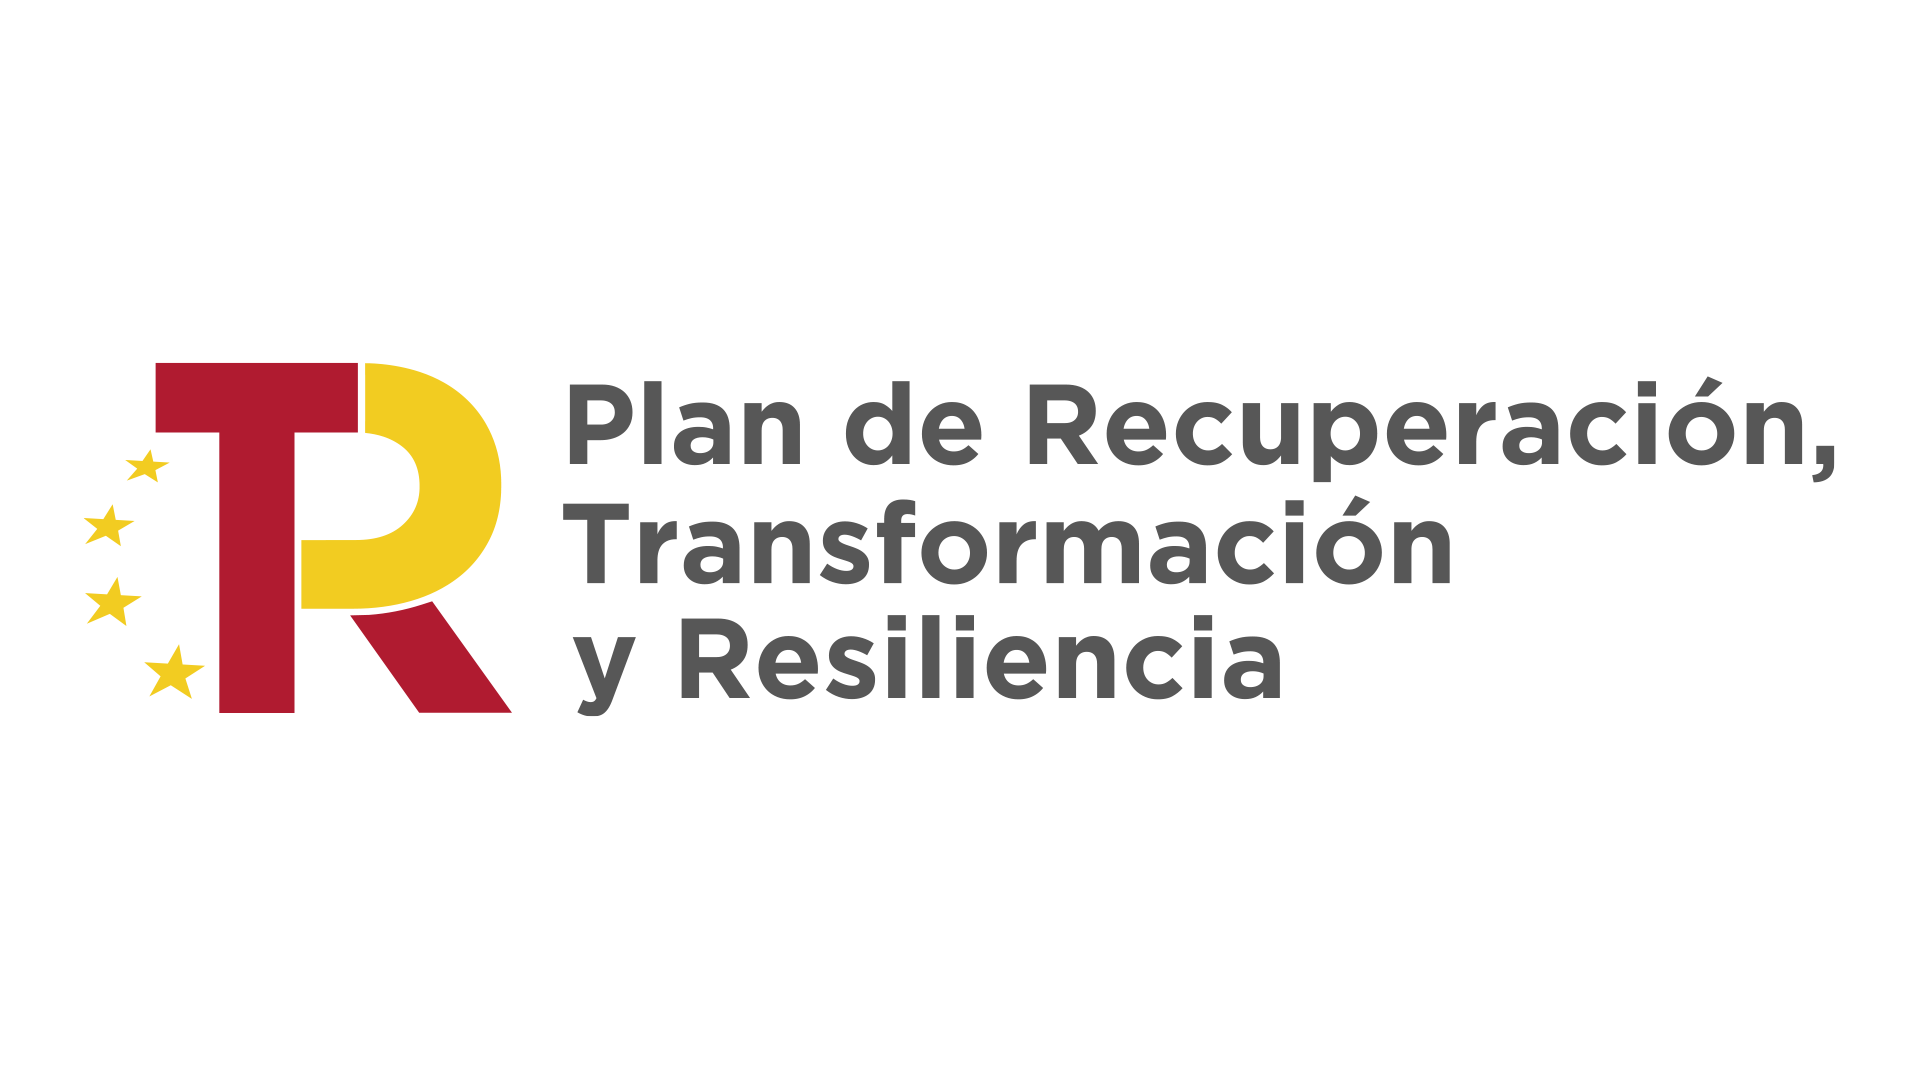 Logotipo Plan de Recuperación, Transformacion y Resiliencia.